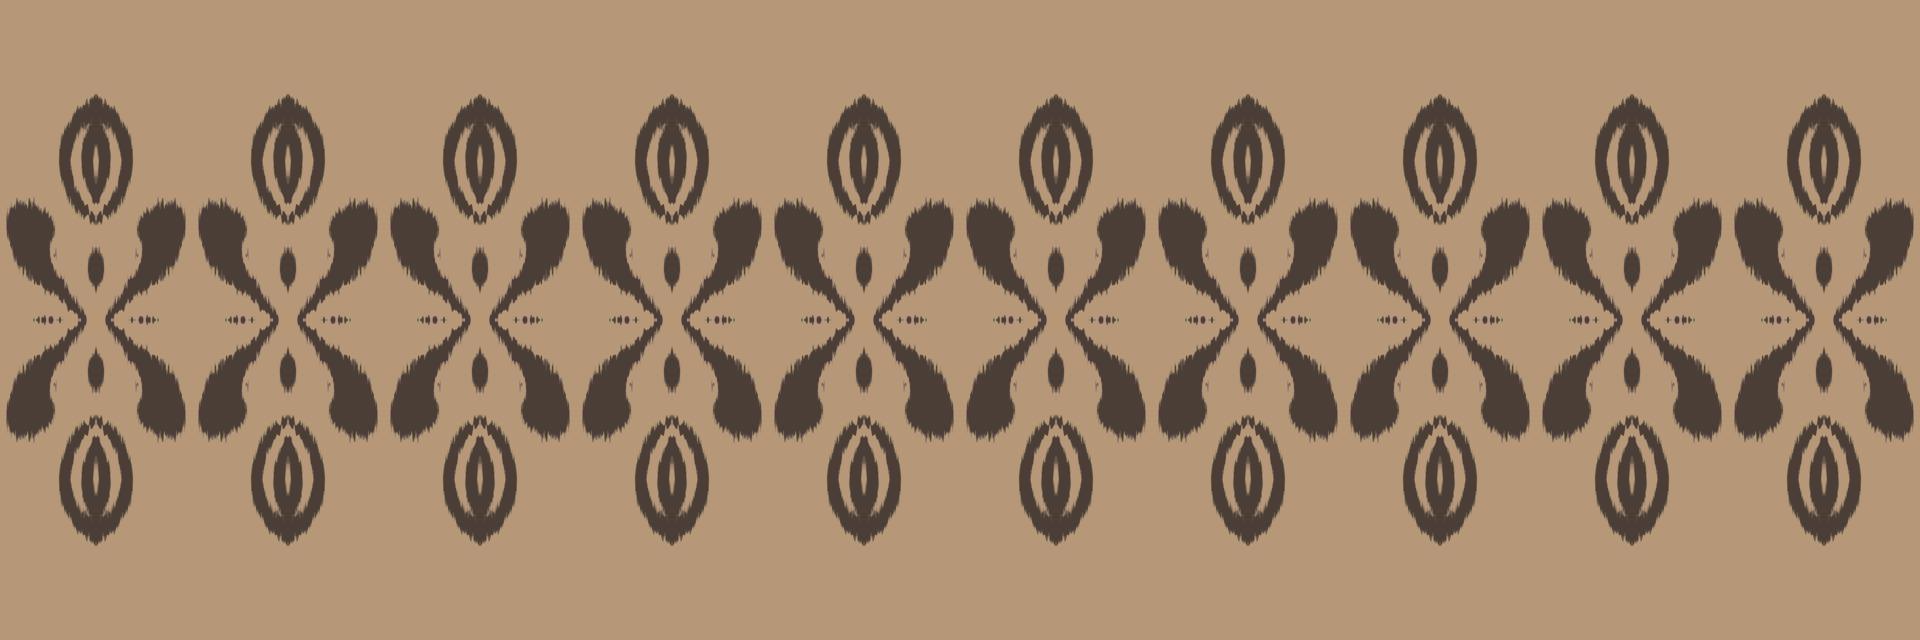 batik tessile ikat diamante senza soluzione di continuità modello digitale vettore design per Stampa saree Kurti Borneo tessuto confine spazzola simboli campioni progettista